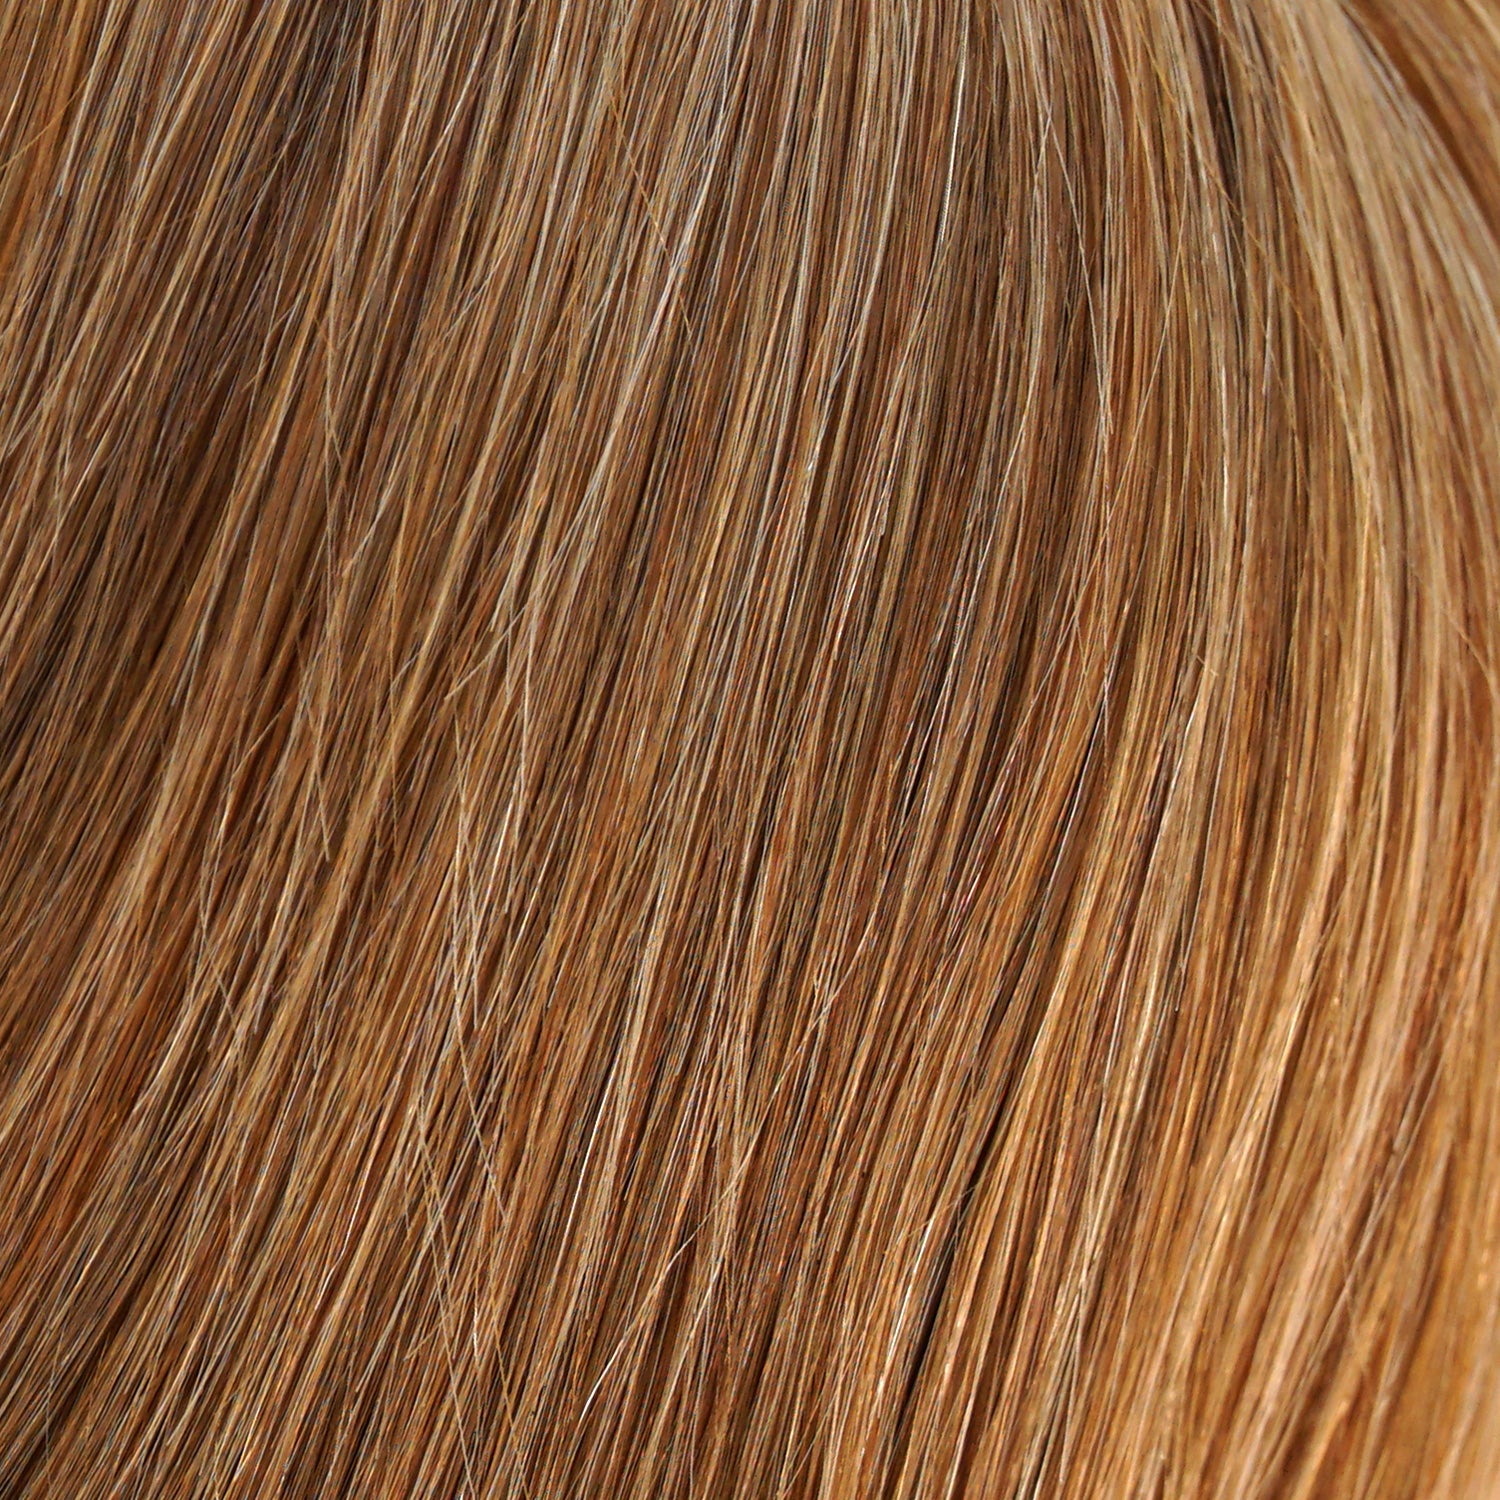 Perruque Cheveux Naturels Blonds Jon Renau Blake Couleur 14-26